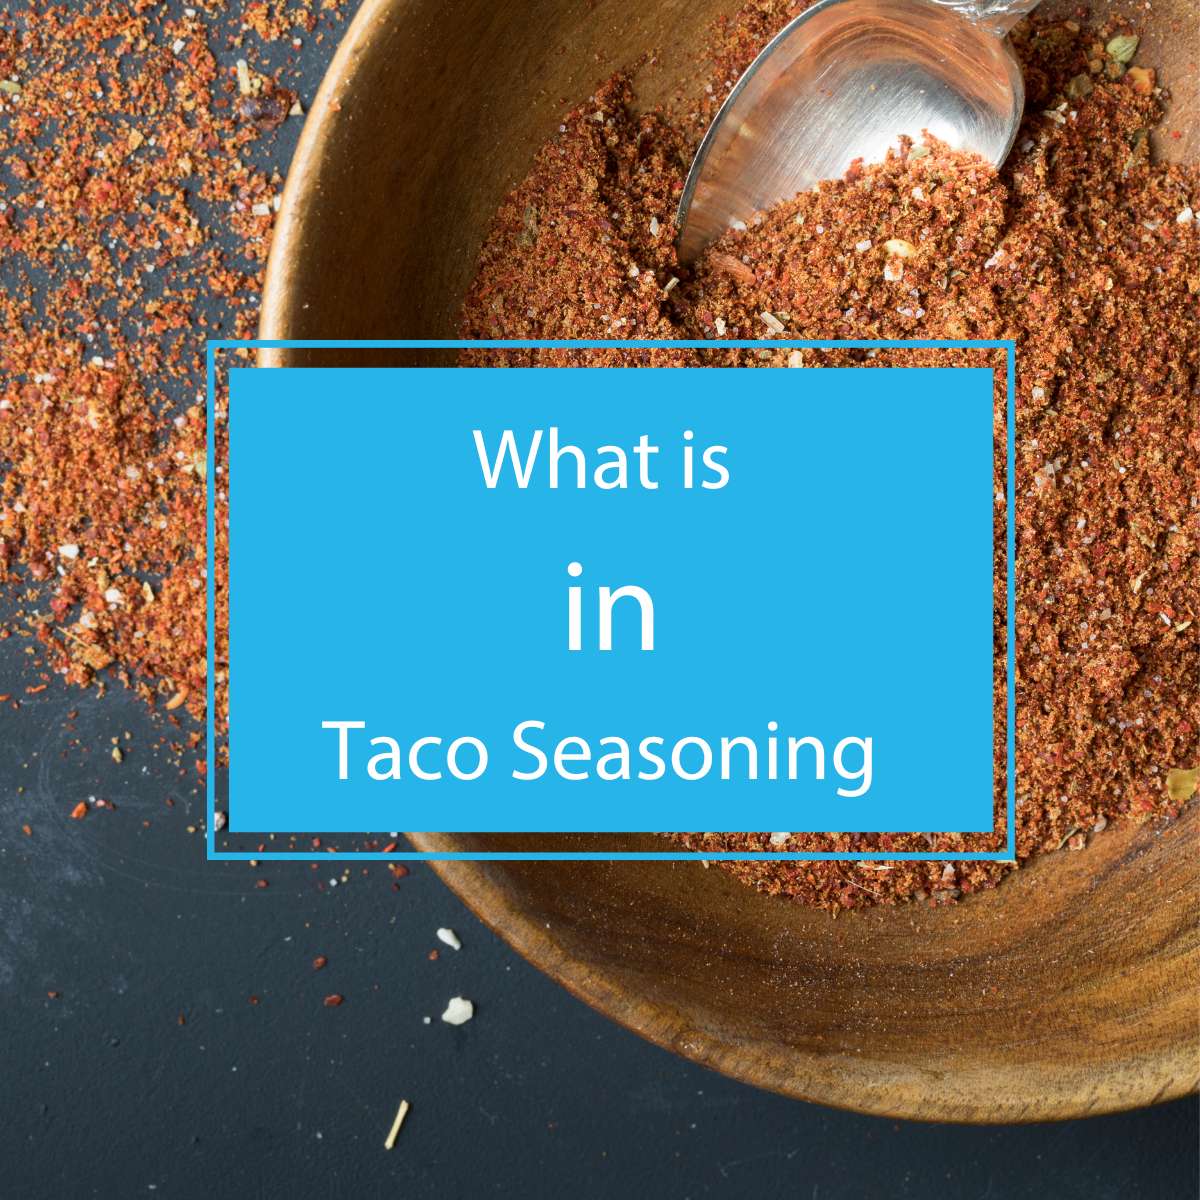 What is in taco seasoning